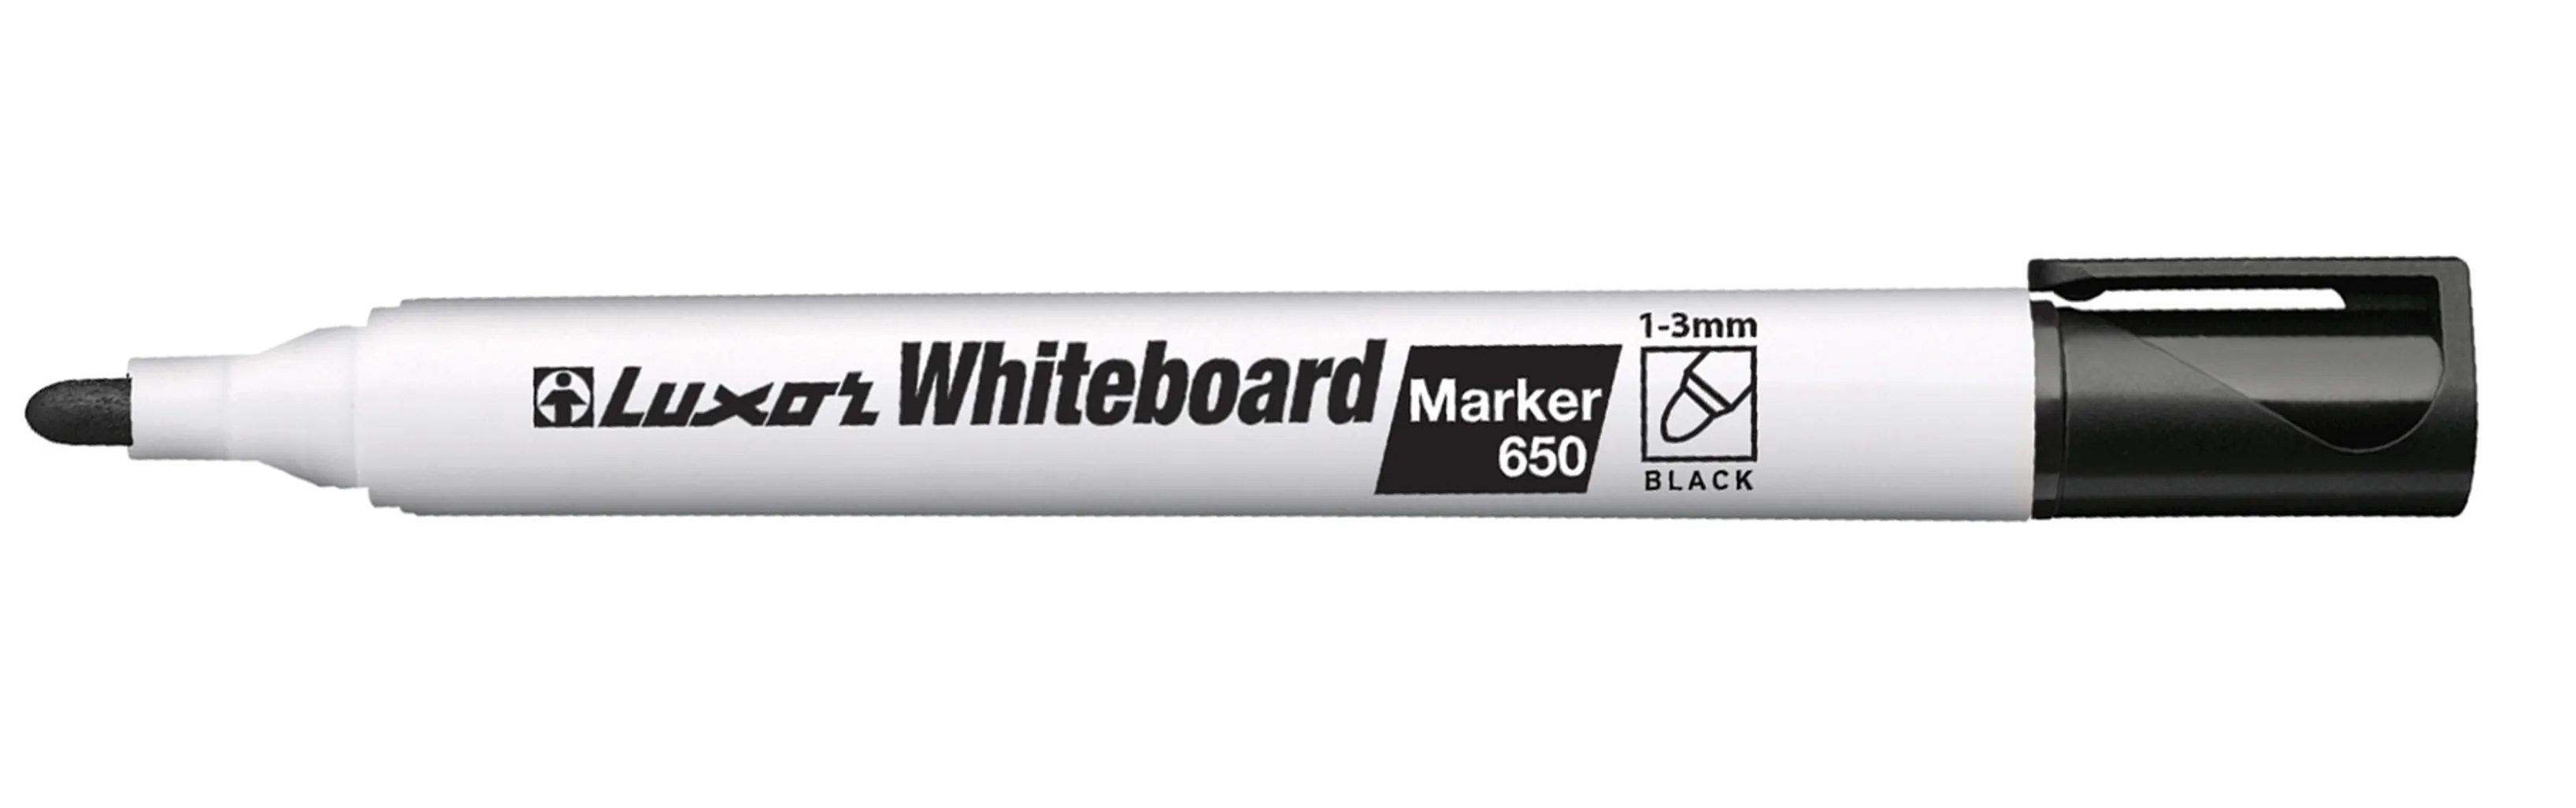 650 whiteboard marker